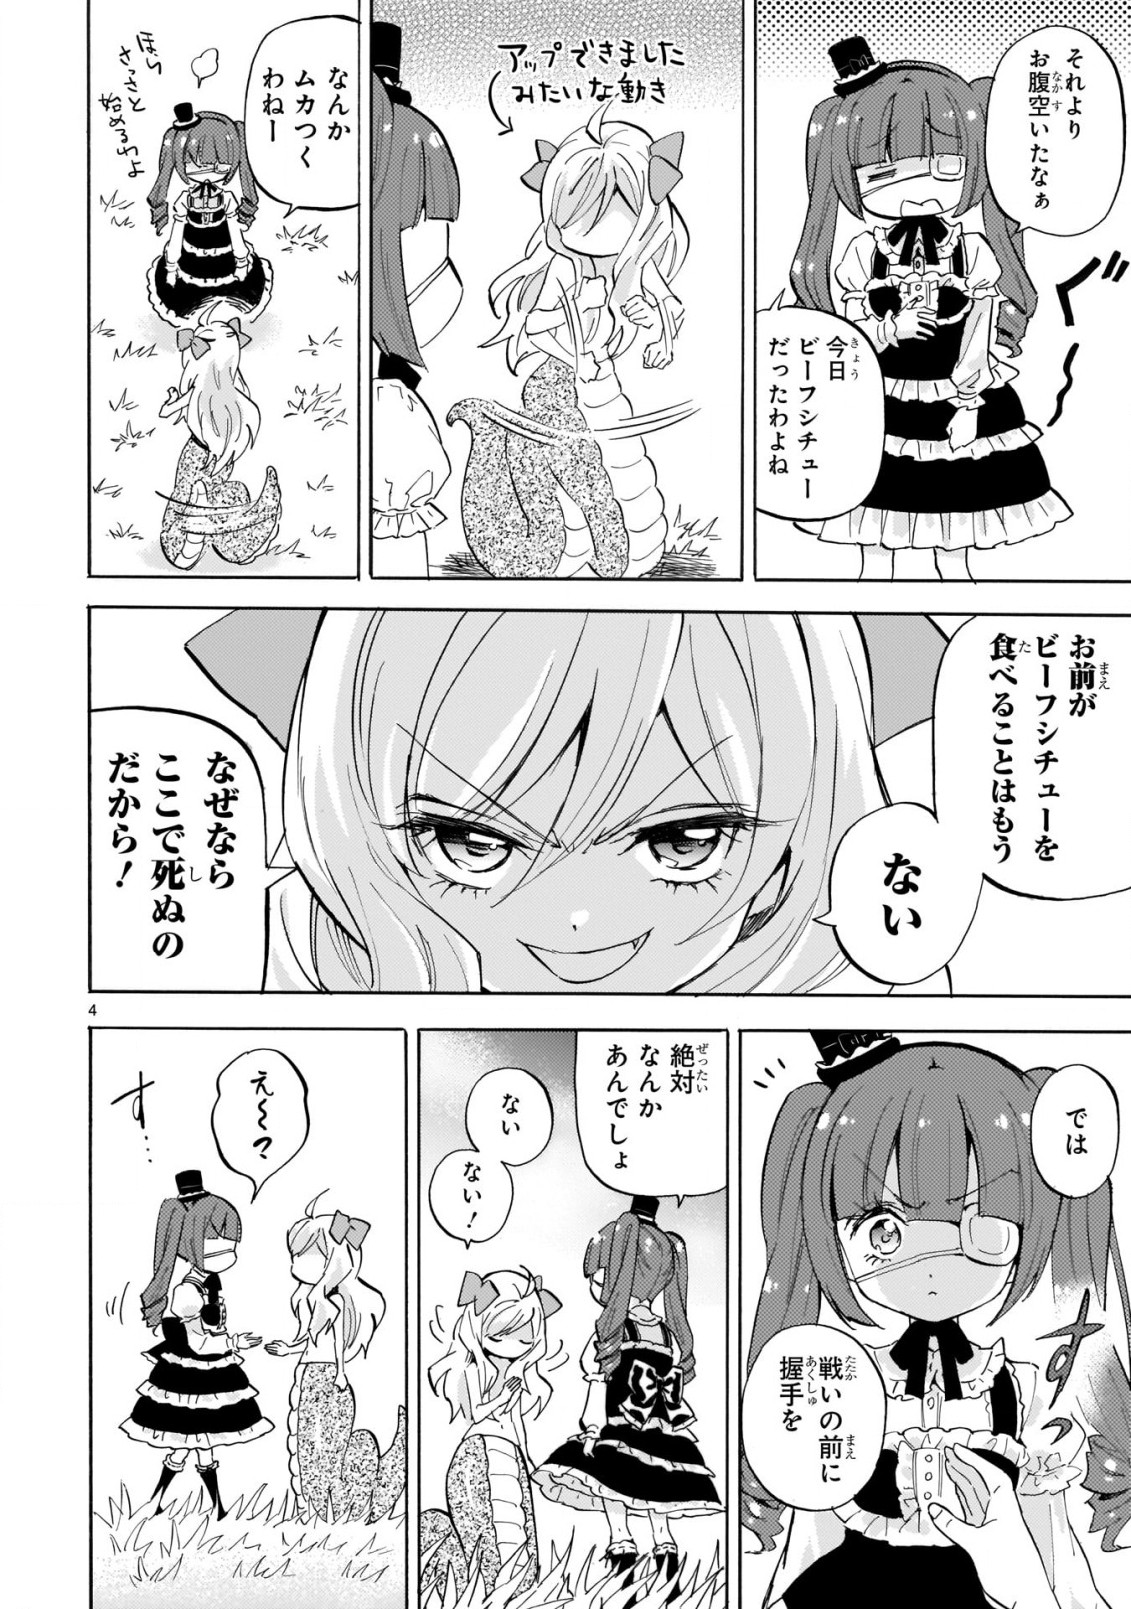 Jashin-chan Dropkick - Chapter 223 - Page 4